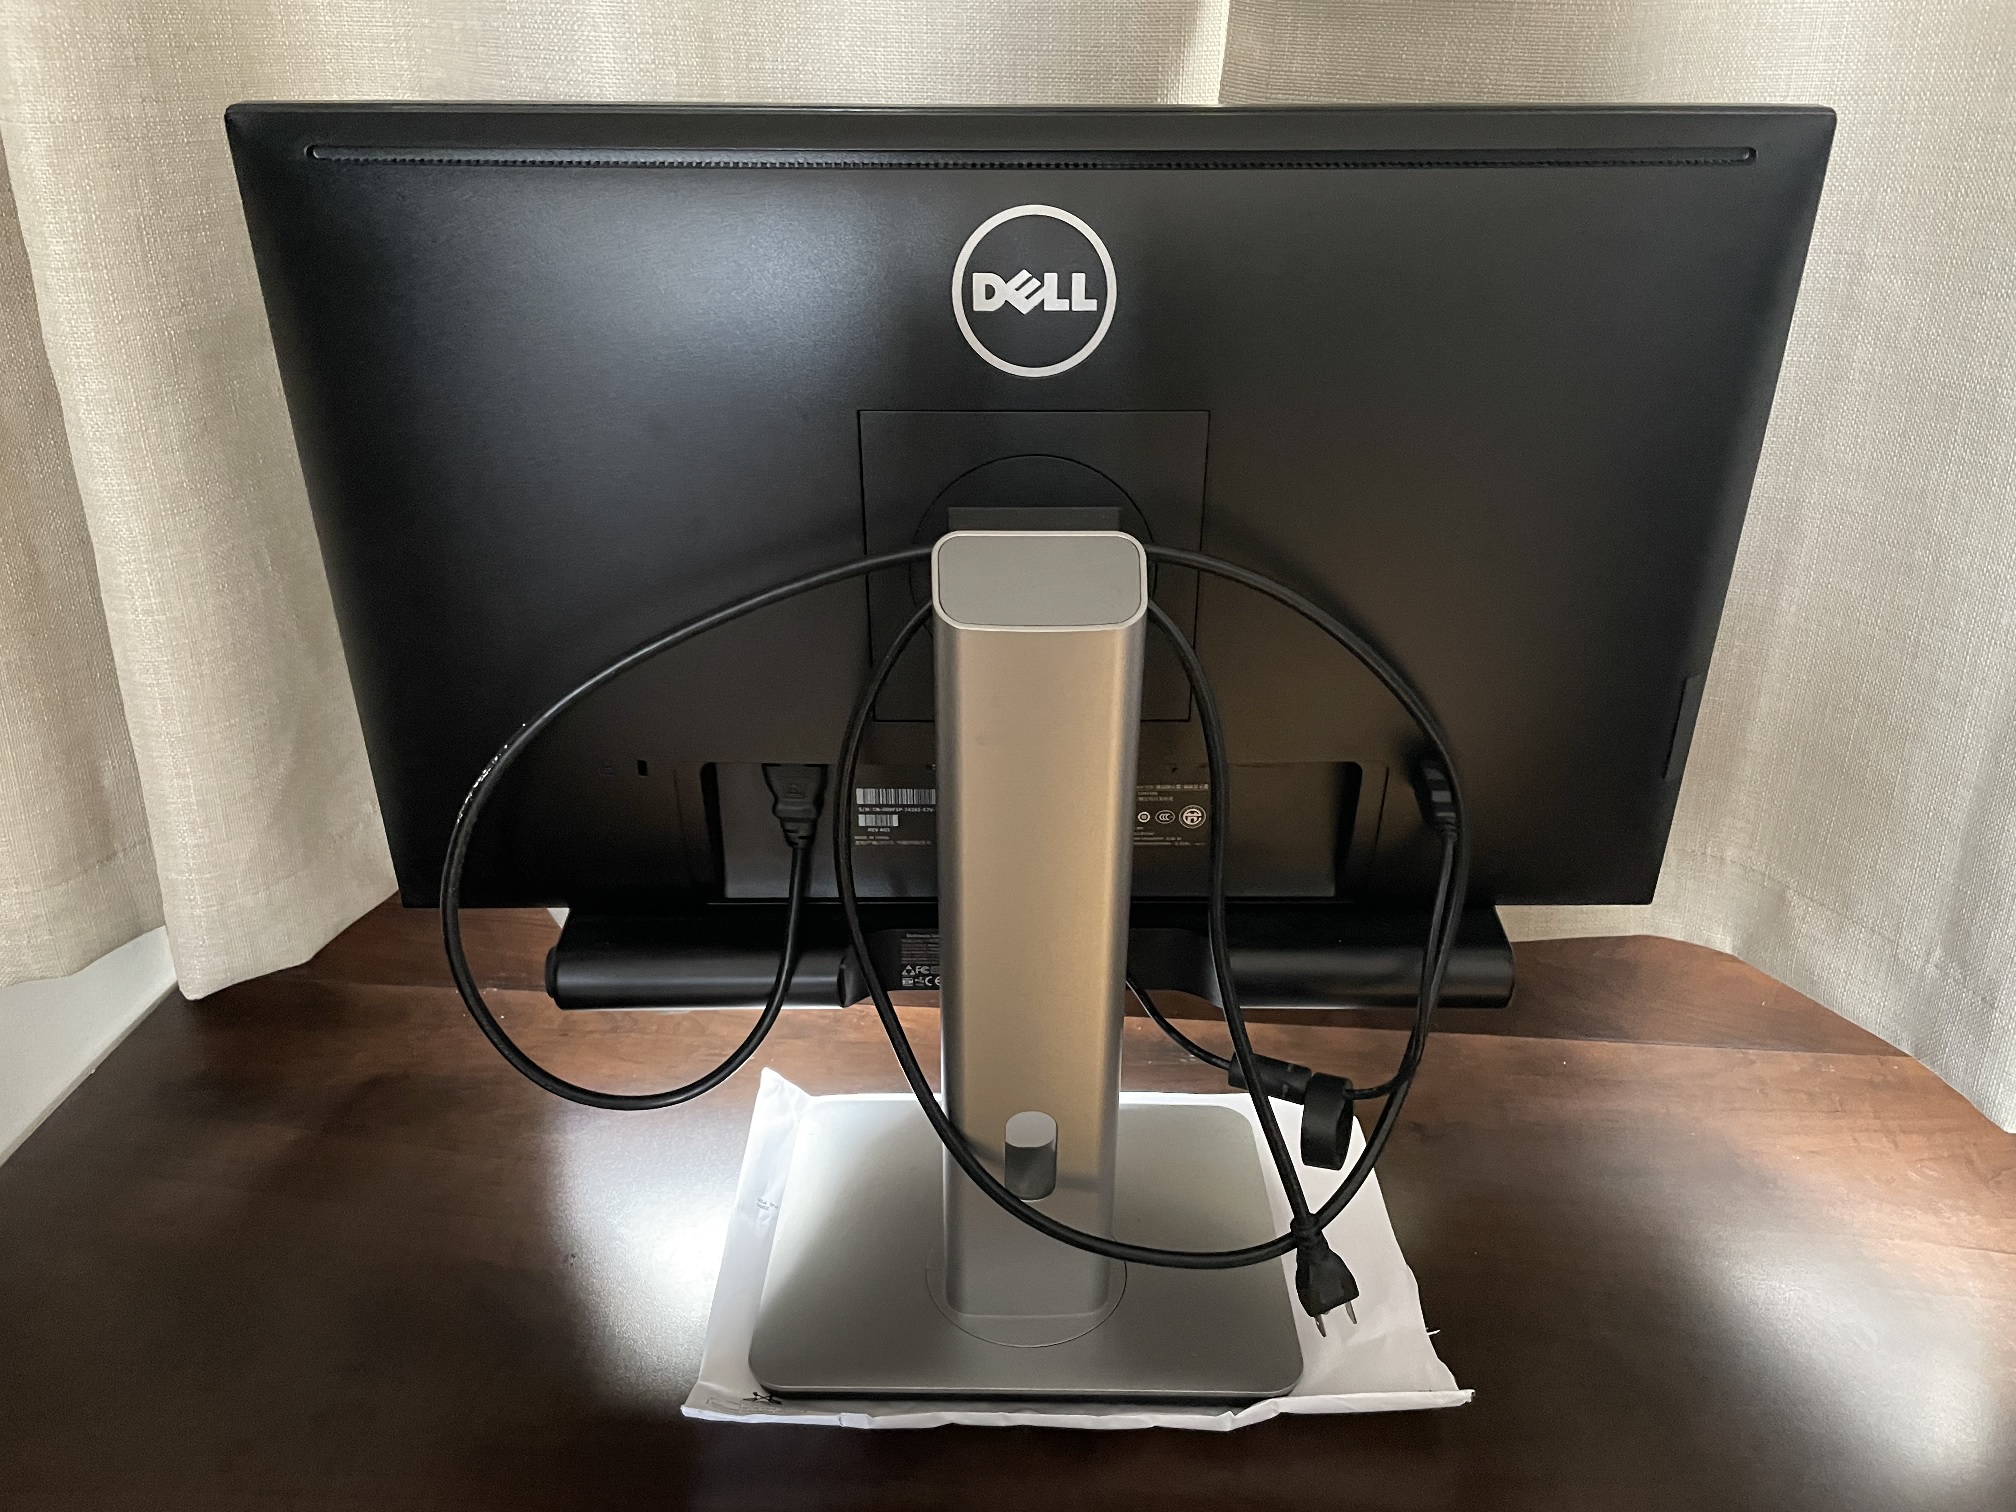 Dell monitor.jpg